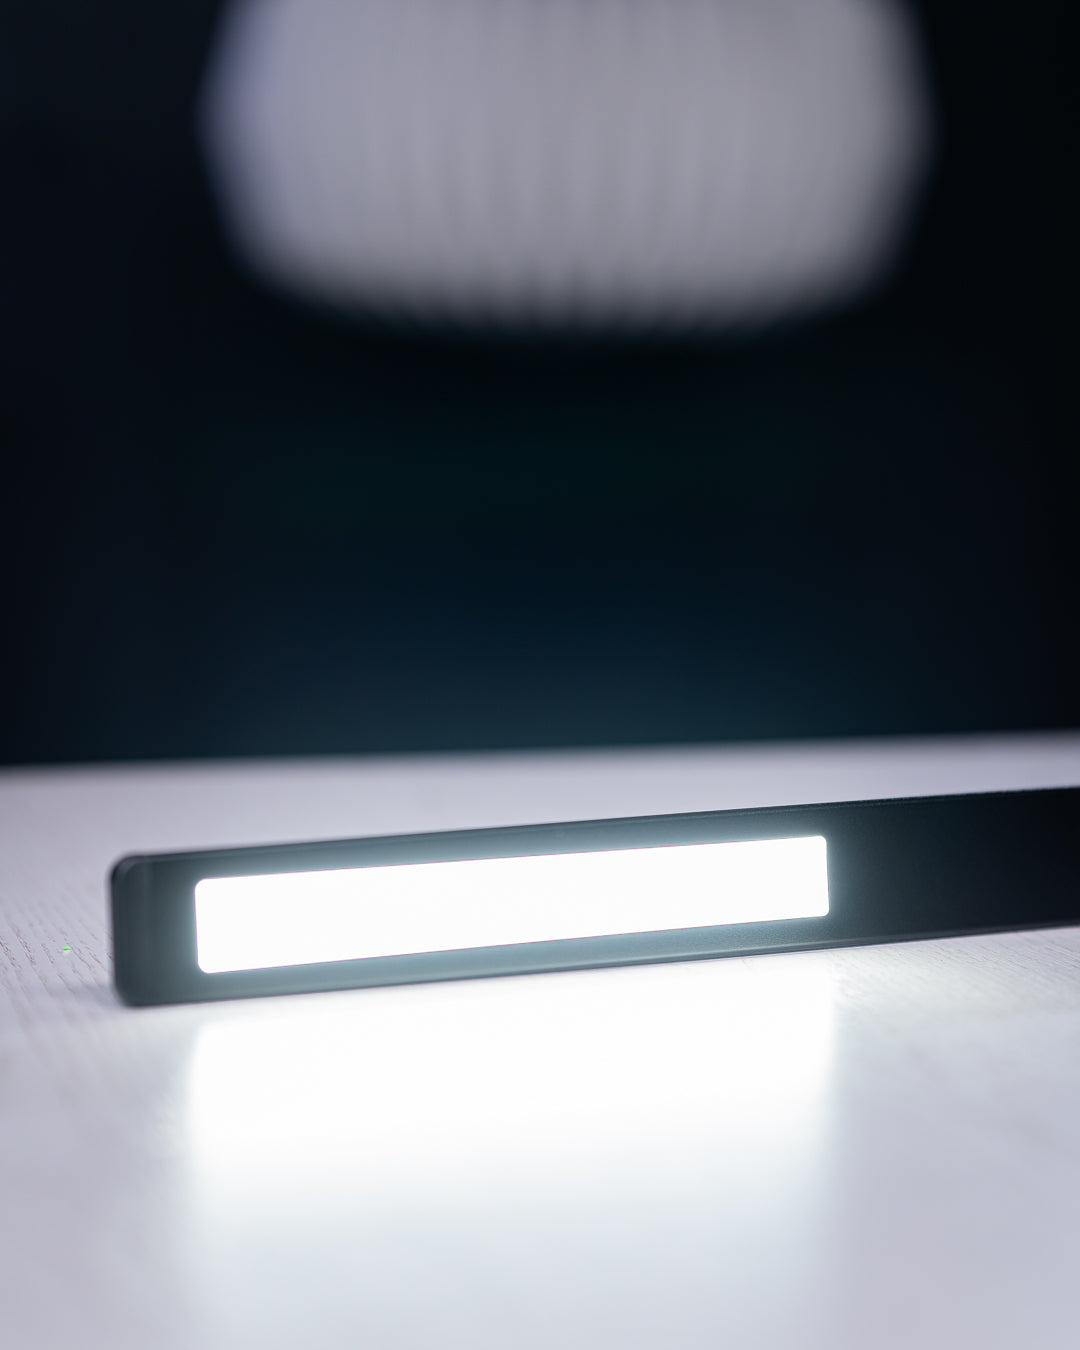 Lampă LED Inteligentă Birou Meross, WI-FI